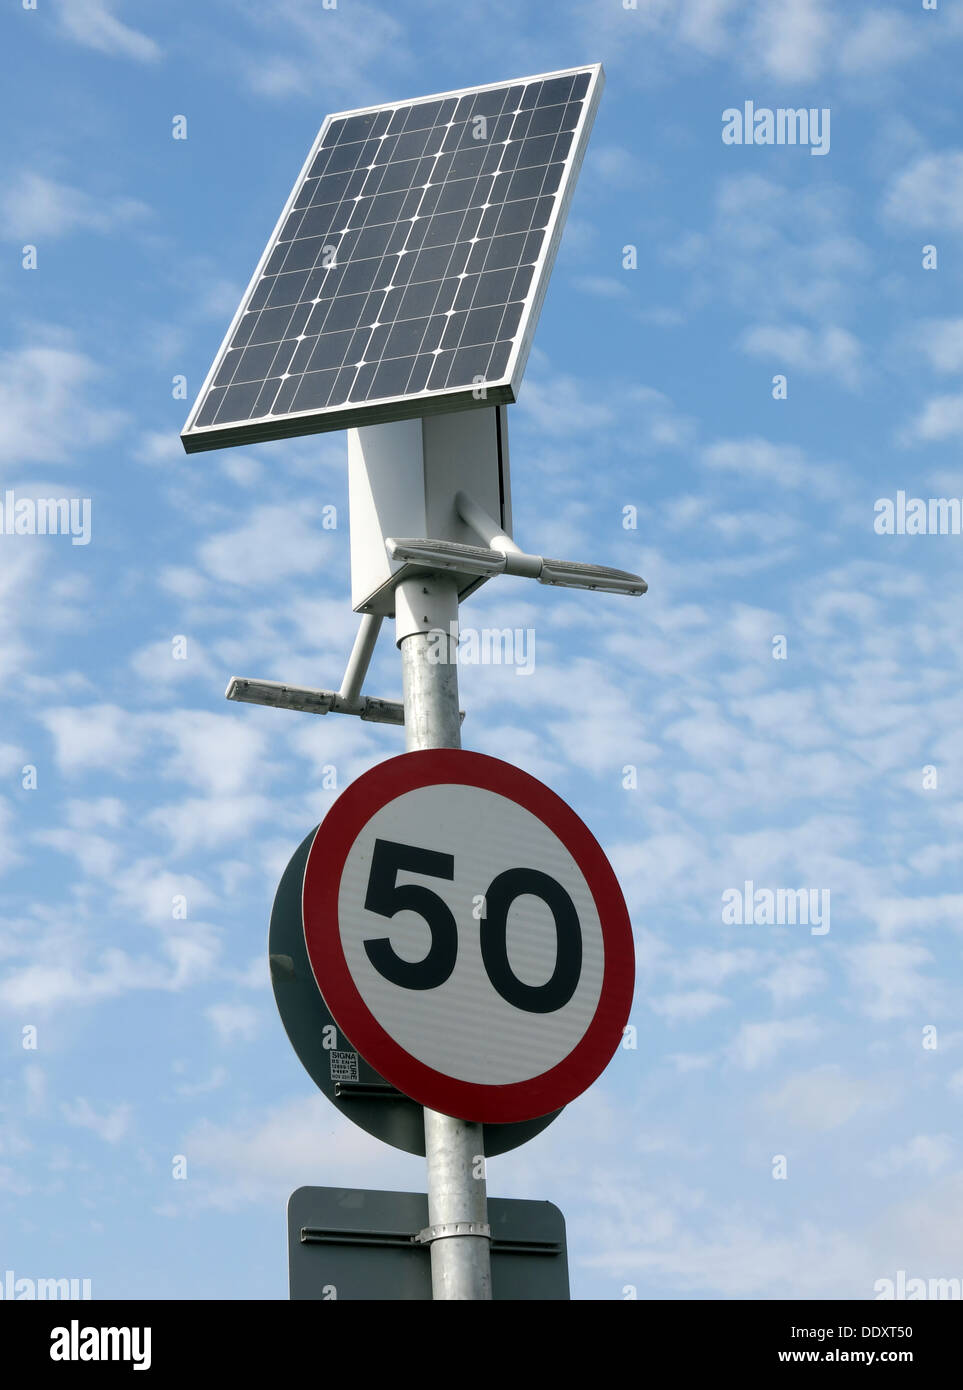 Mobilier urbain à énergie solaire de 50 mi/h la vitesse sur route signer , Lymm, Warrington, Cheshire, England, UK Banque D'Images